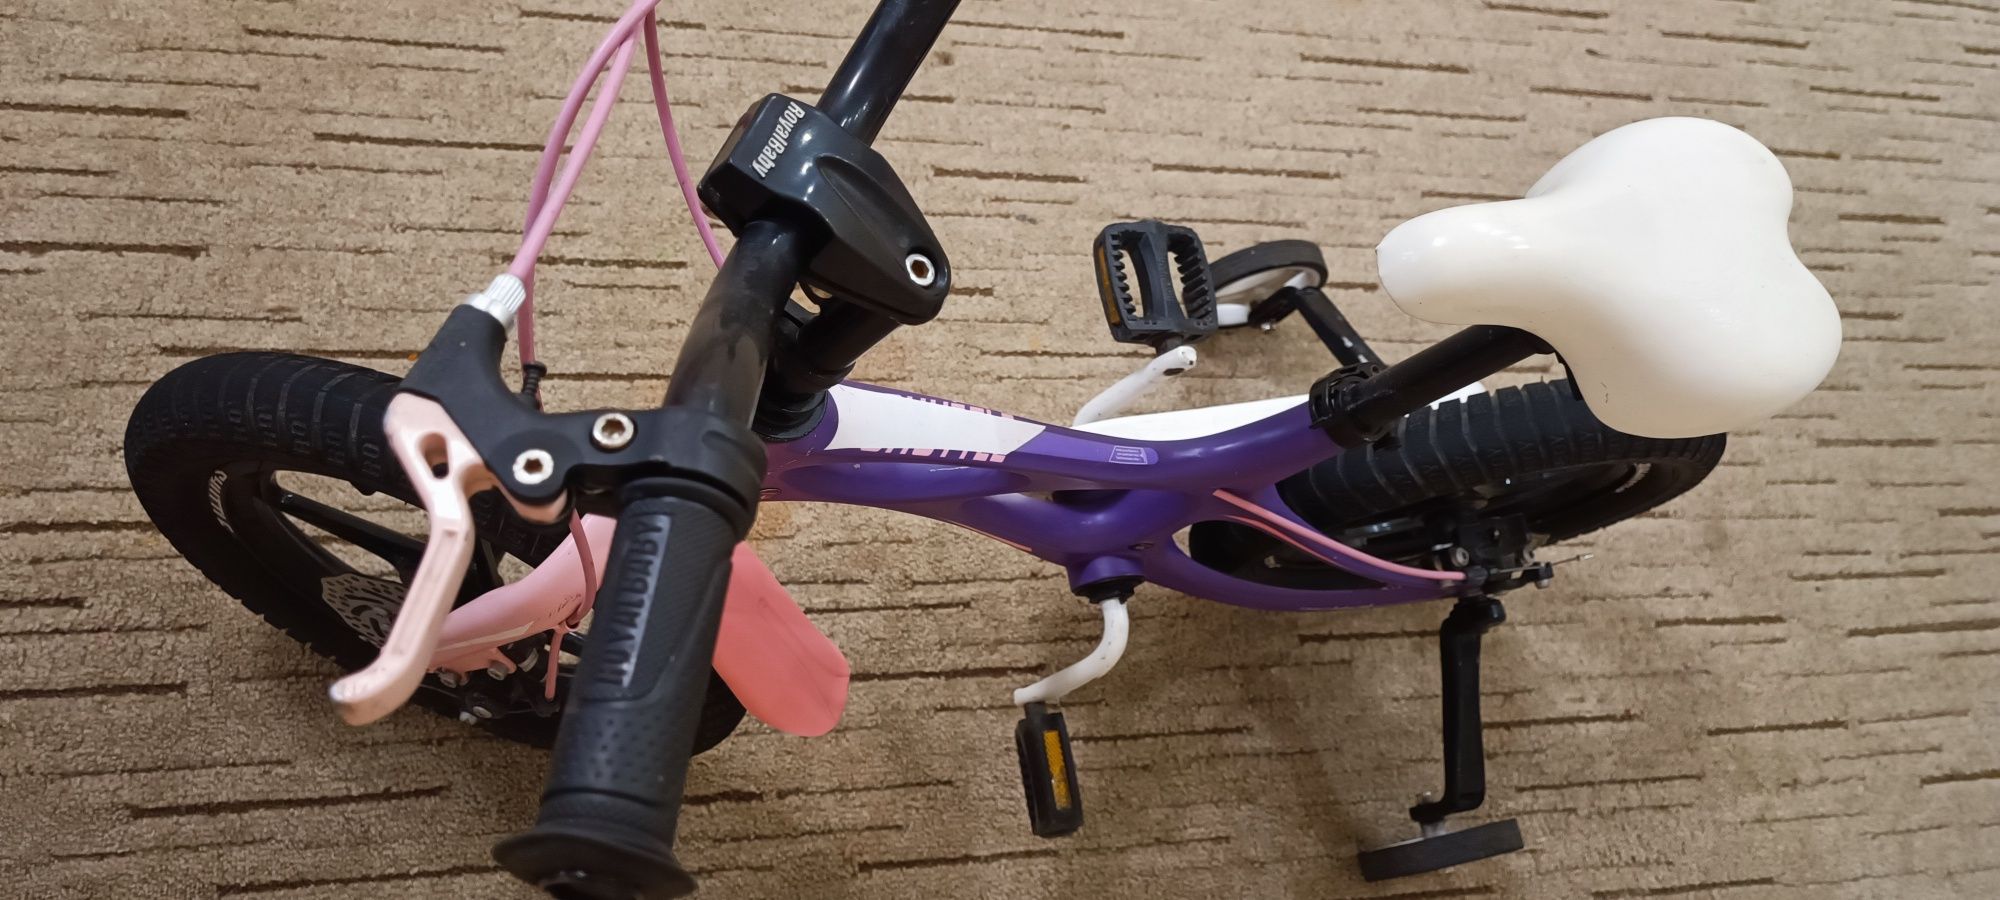 Дитячий Велосипед RoyalBaby SPACE SHUTTLE 14″ Фіолетовий